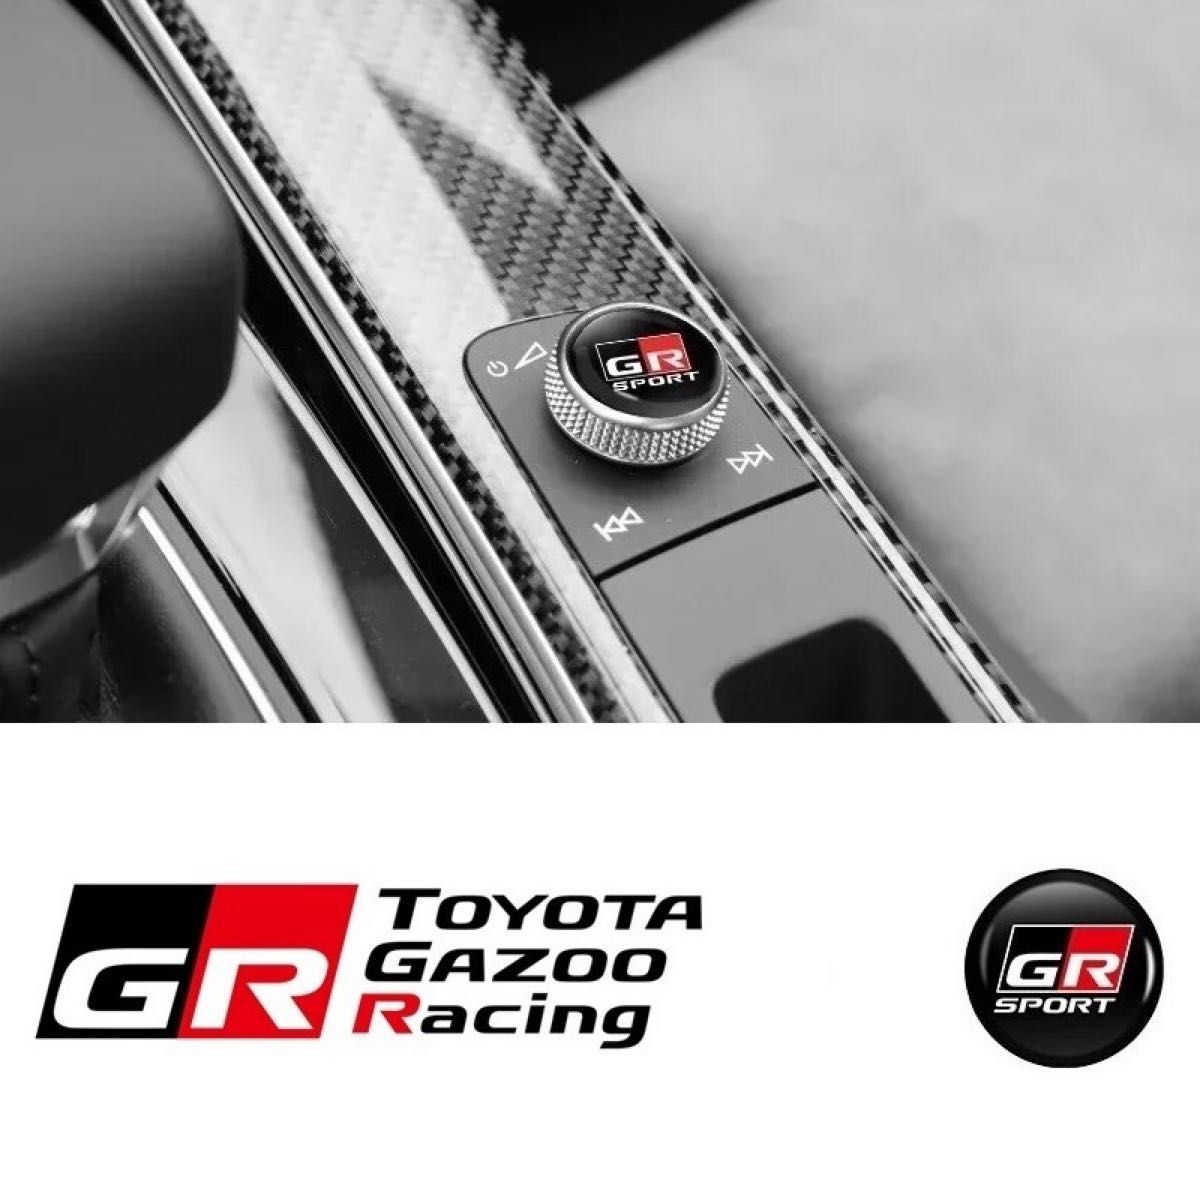 2個 GR SPORT トヨタTOYOTA GAZOO Racing 3Dクリスタルエンブレム15mm鍵穴マーク鍵穴隠しキーレスe